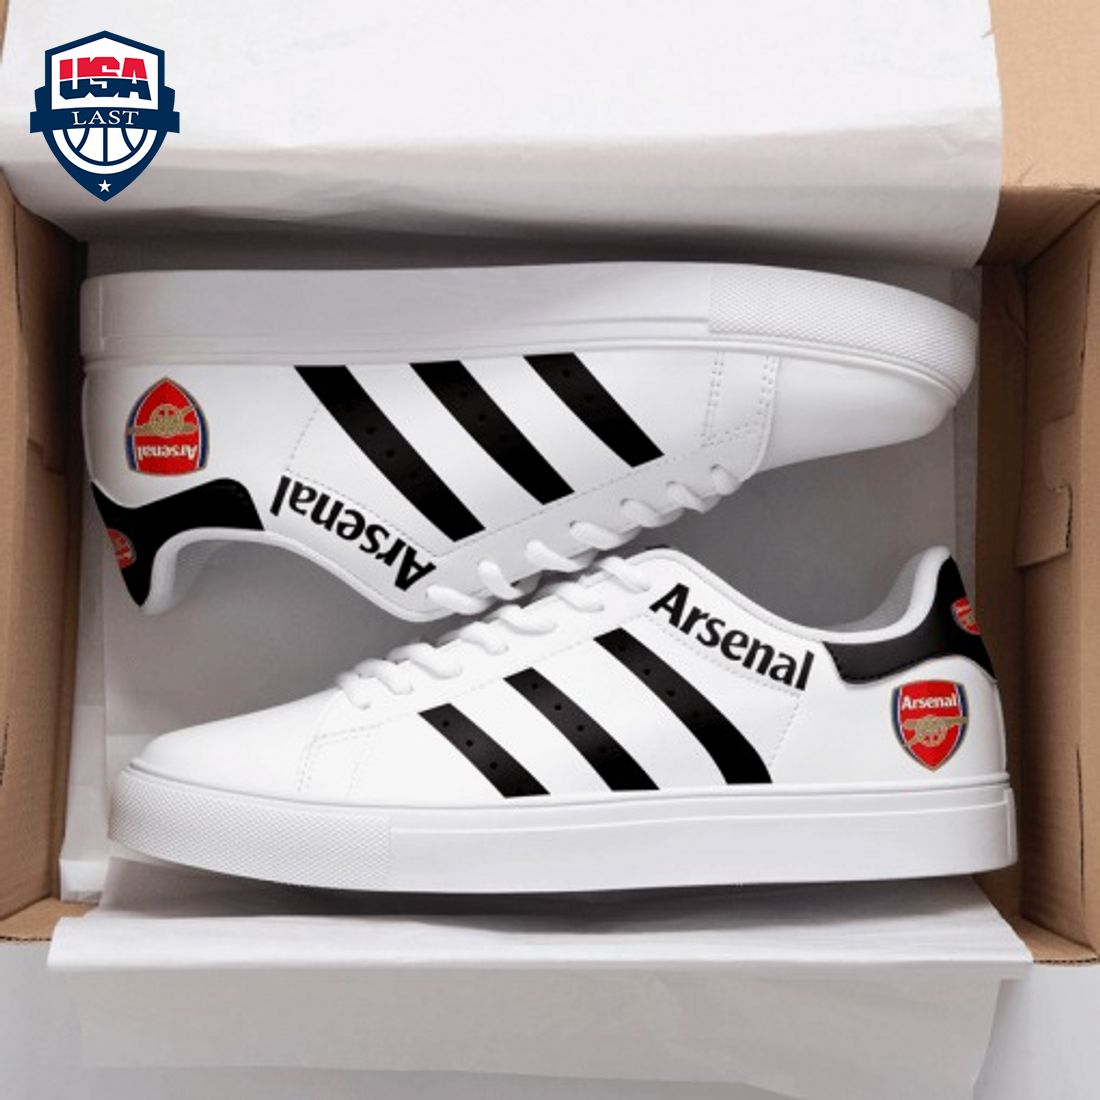 Arsenal FC Black Stripes Stan Smith Low Top Shoes